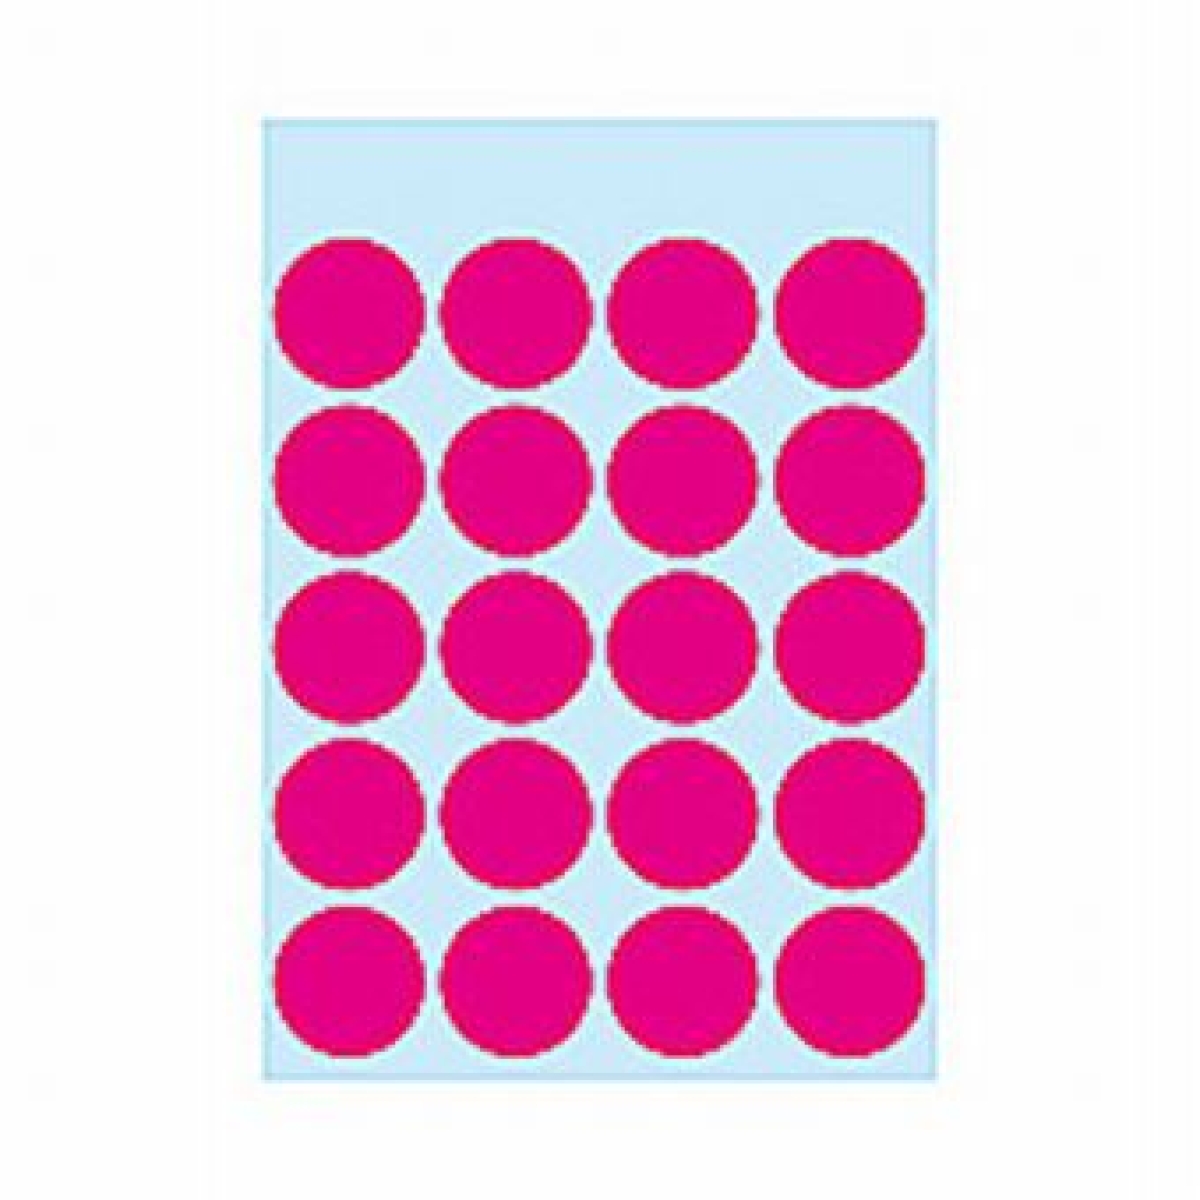 HermaEtikett Markierungspunkt 19mmD 100ST pink haftend 1886Artikel-Nr: 4008705018869